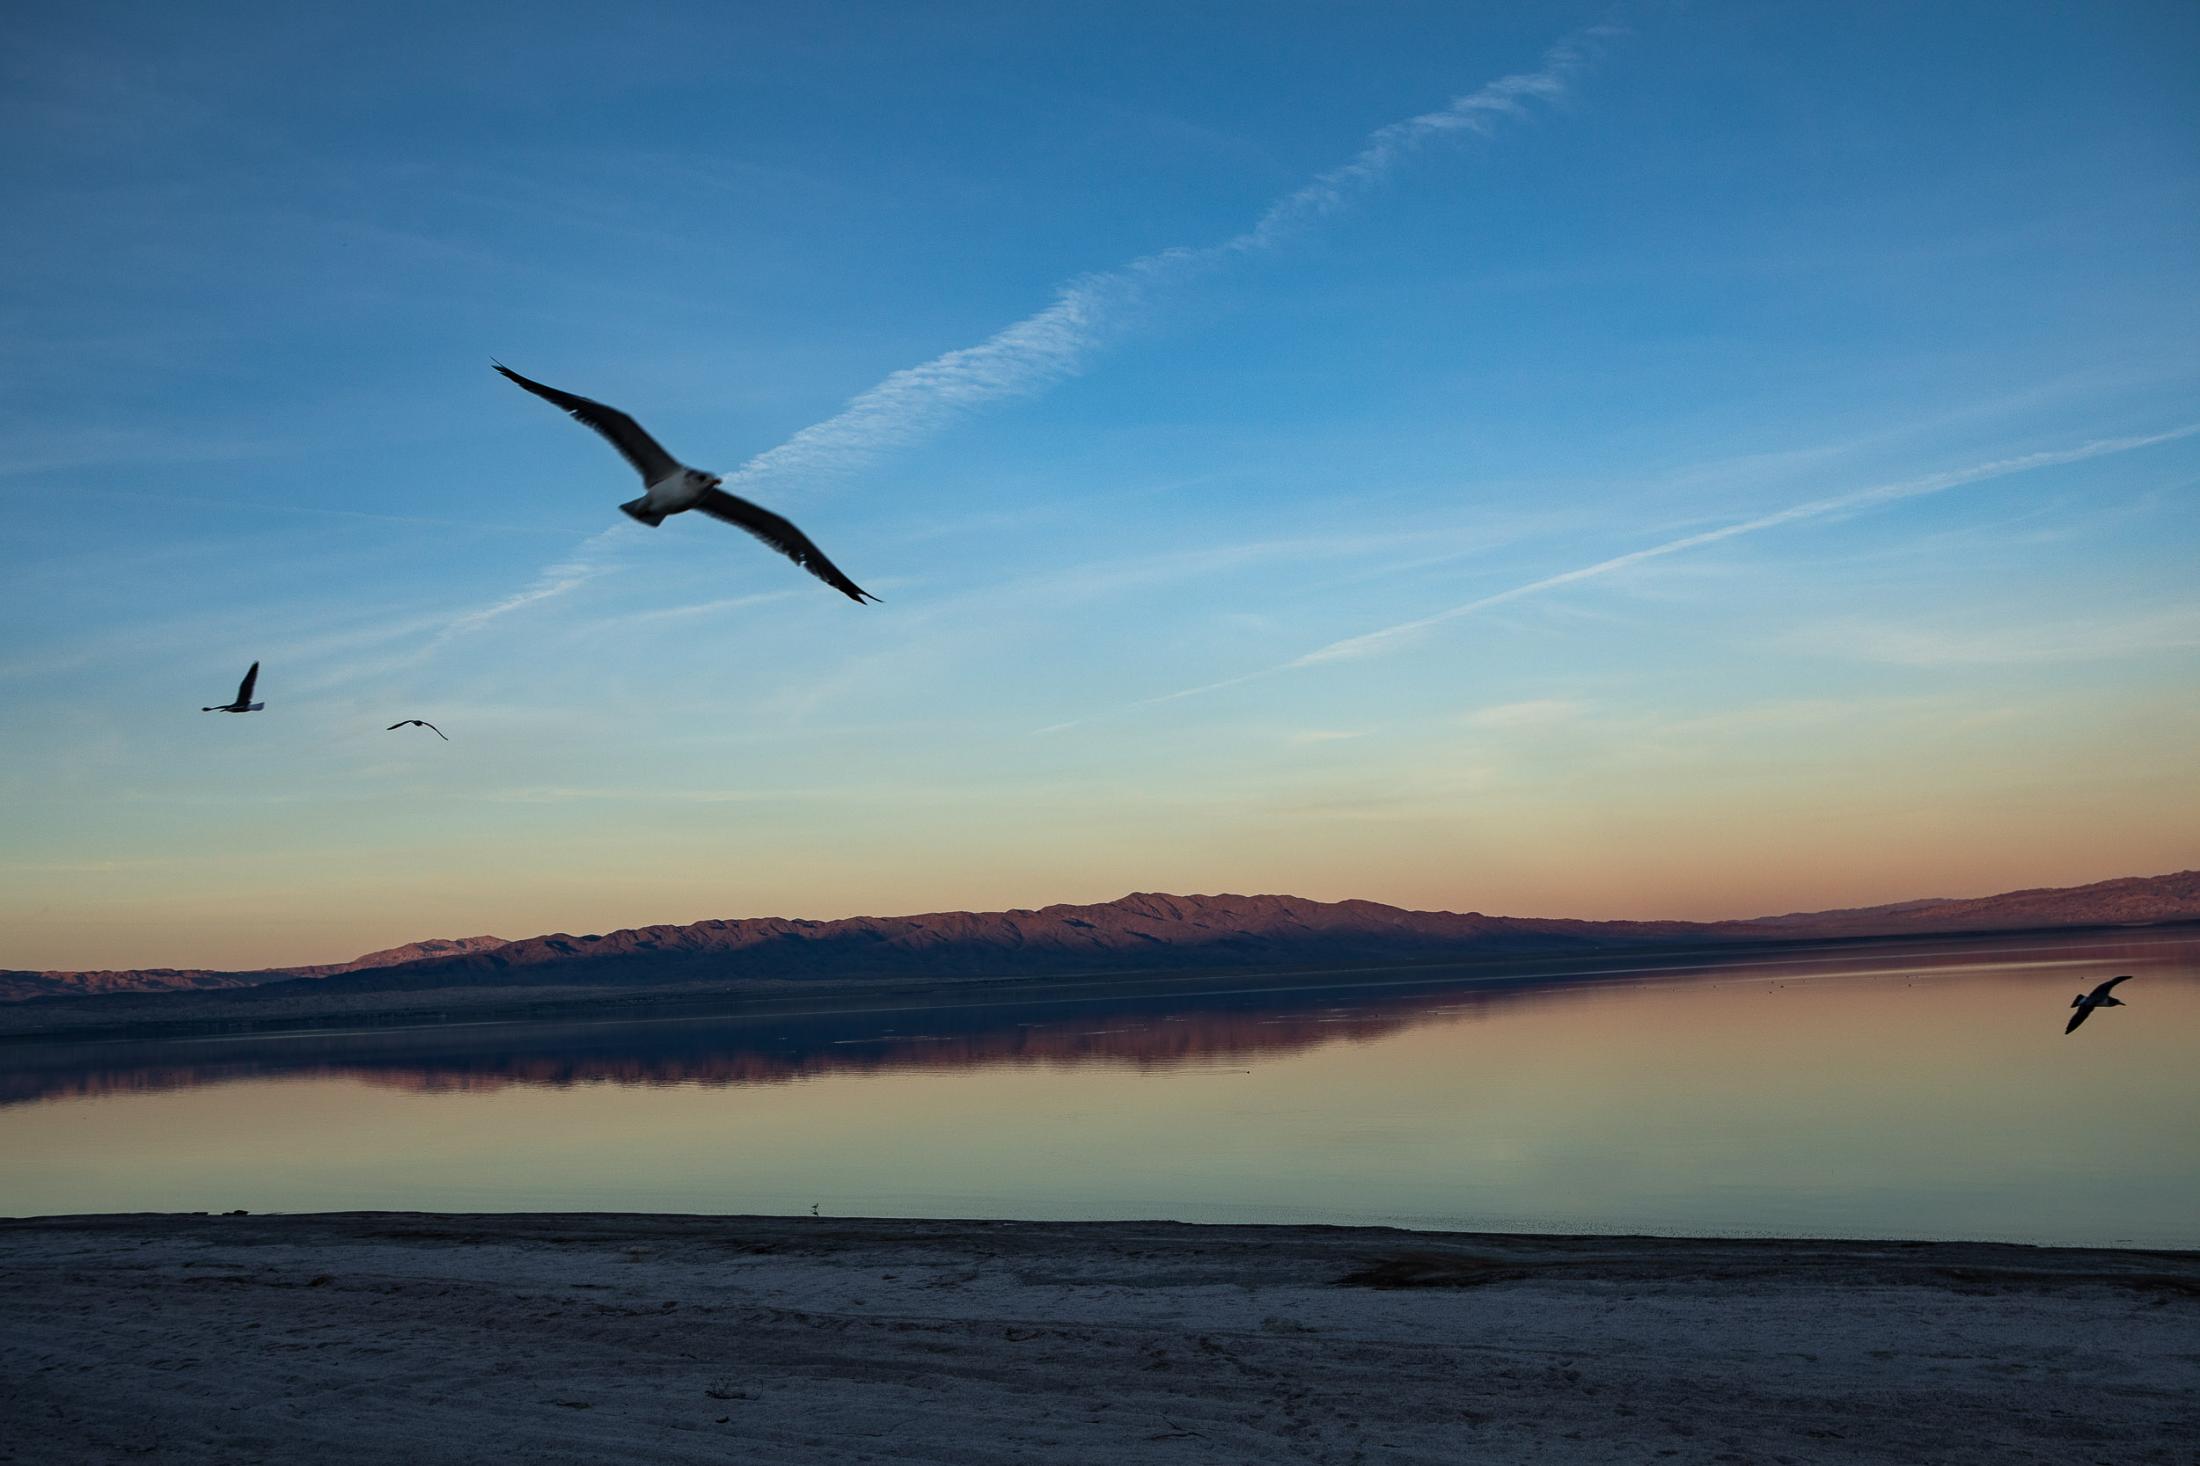  - The Salton Sea - The sunset over the Salton sea,